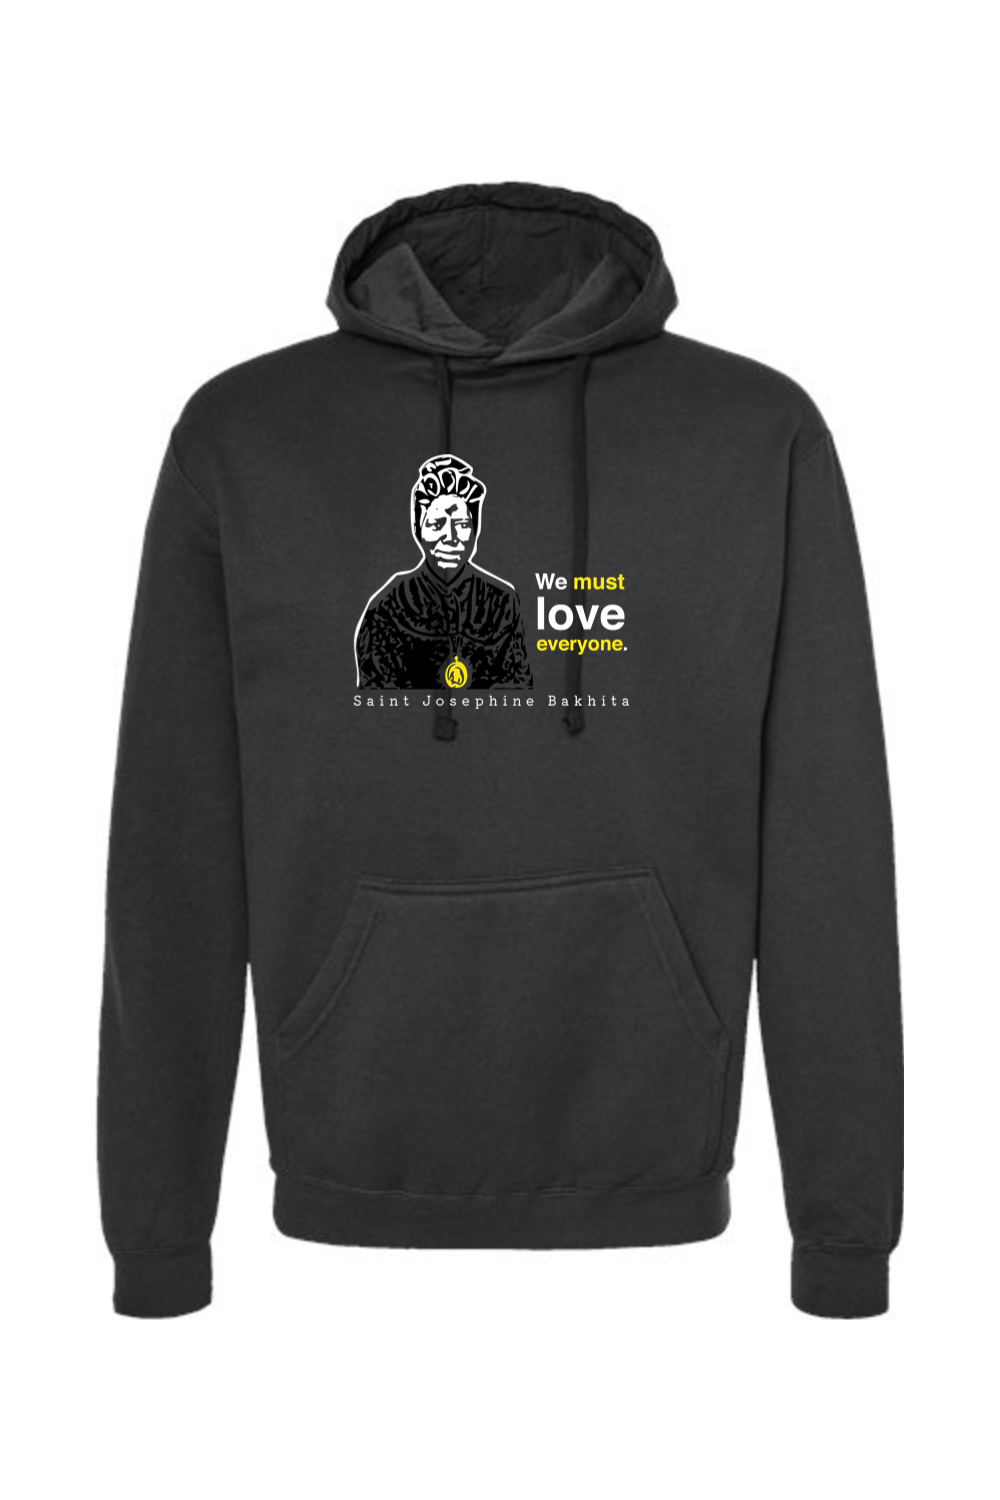 We Must Love Everyone - St. Josephine Bakhita Hoodie Sweatshirt